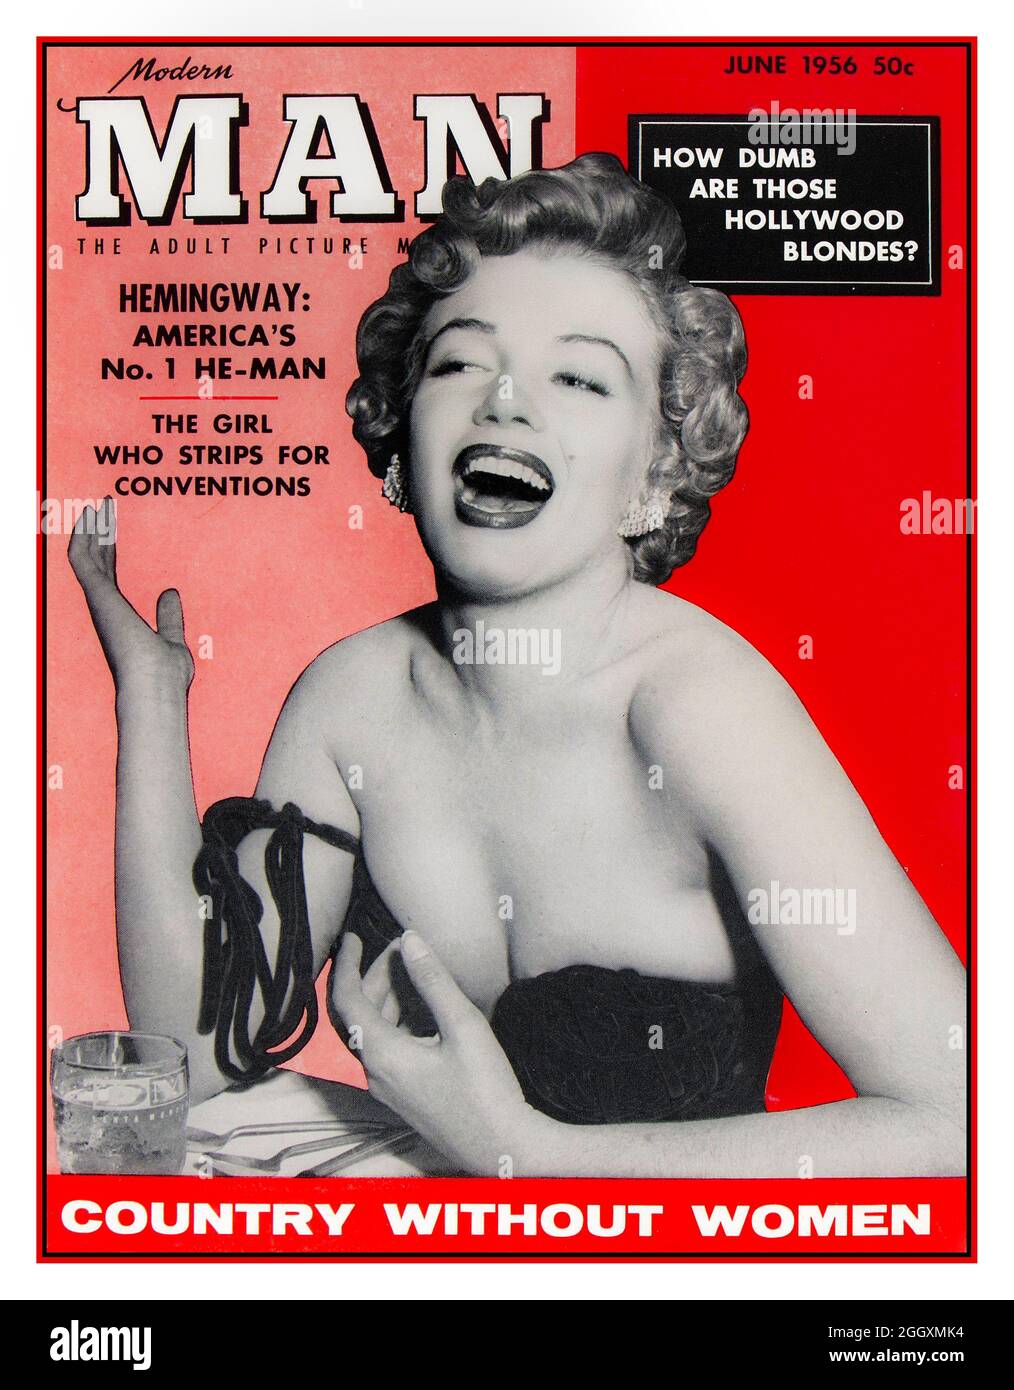 1956 Marilyn Monroe auf dem Titelbild von Modern man, einem männlichen Klatsch- und Titelmagazin, mit der sexistischen, nicht politisch korrekten Frage 'wie dumm sind die Hollywood Blondes'? Vintage Men's Magazine mit sexistischen Artikeln, Bildern und Pin-up-Bildern Stockfoto